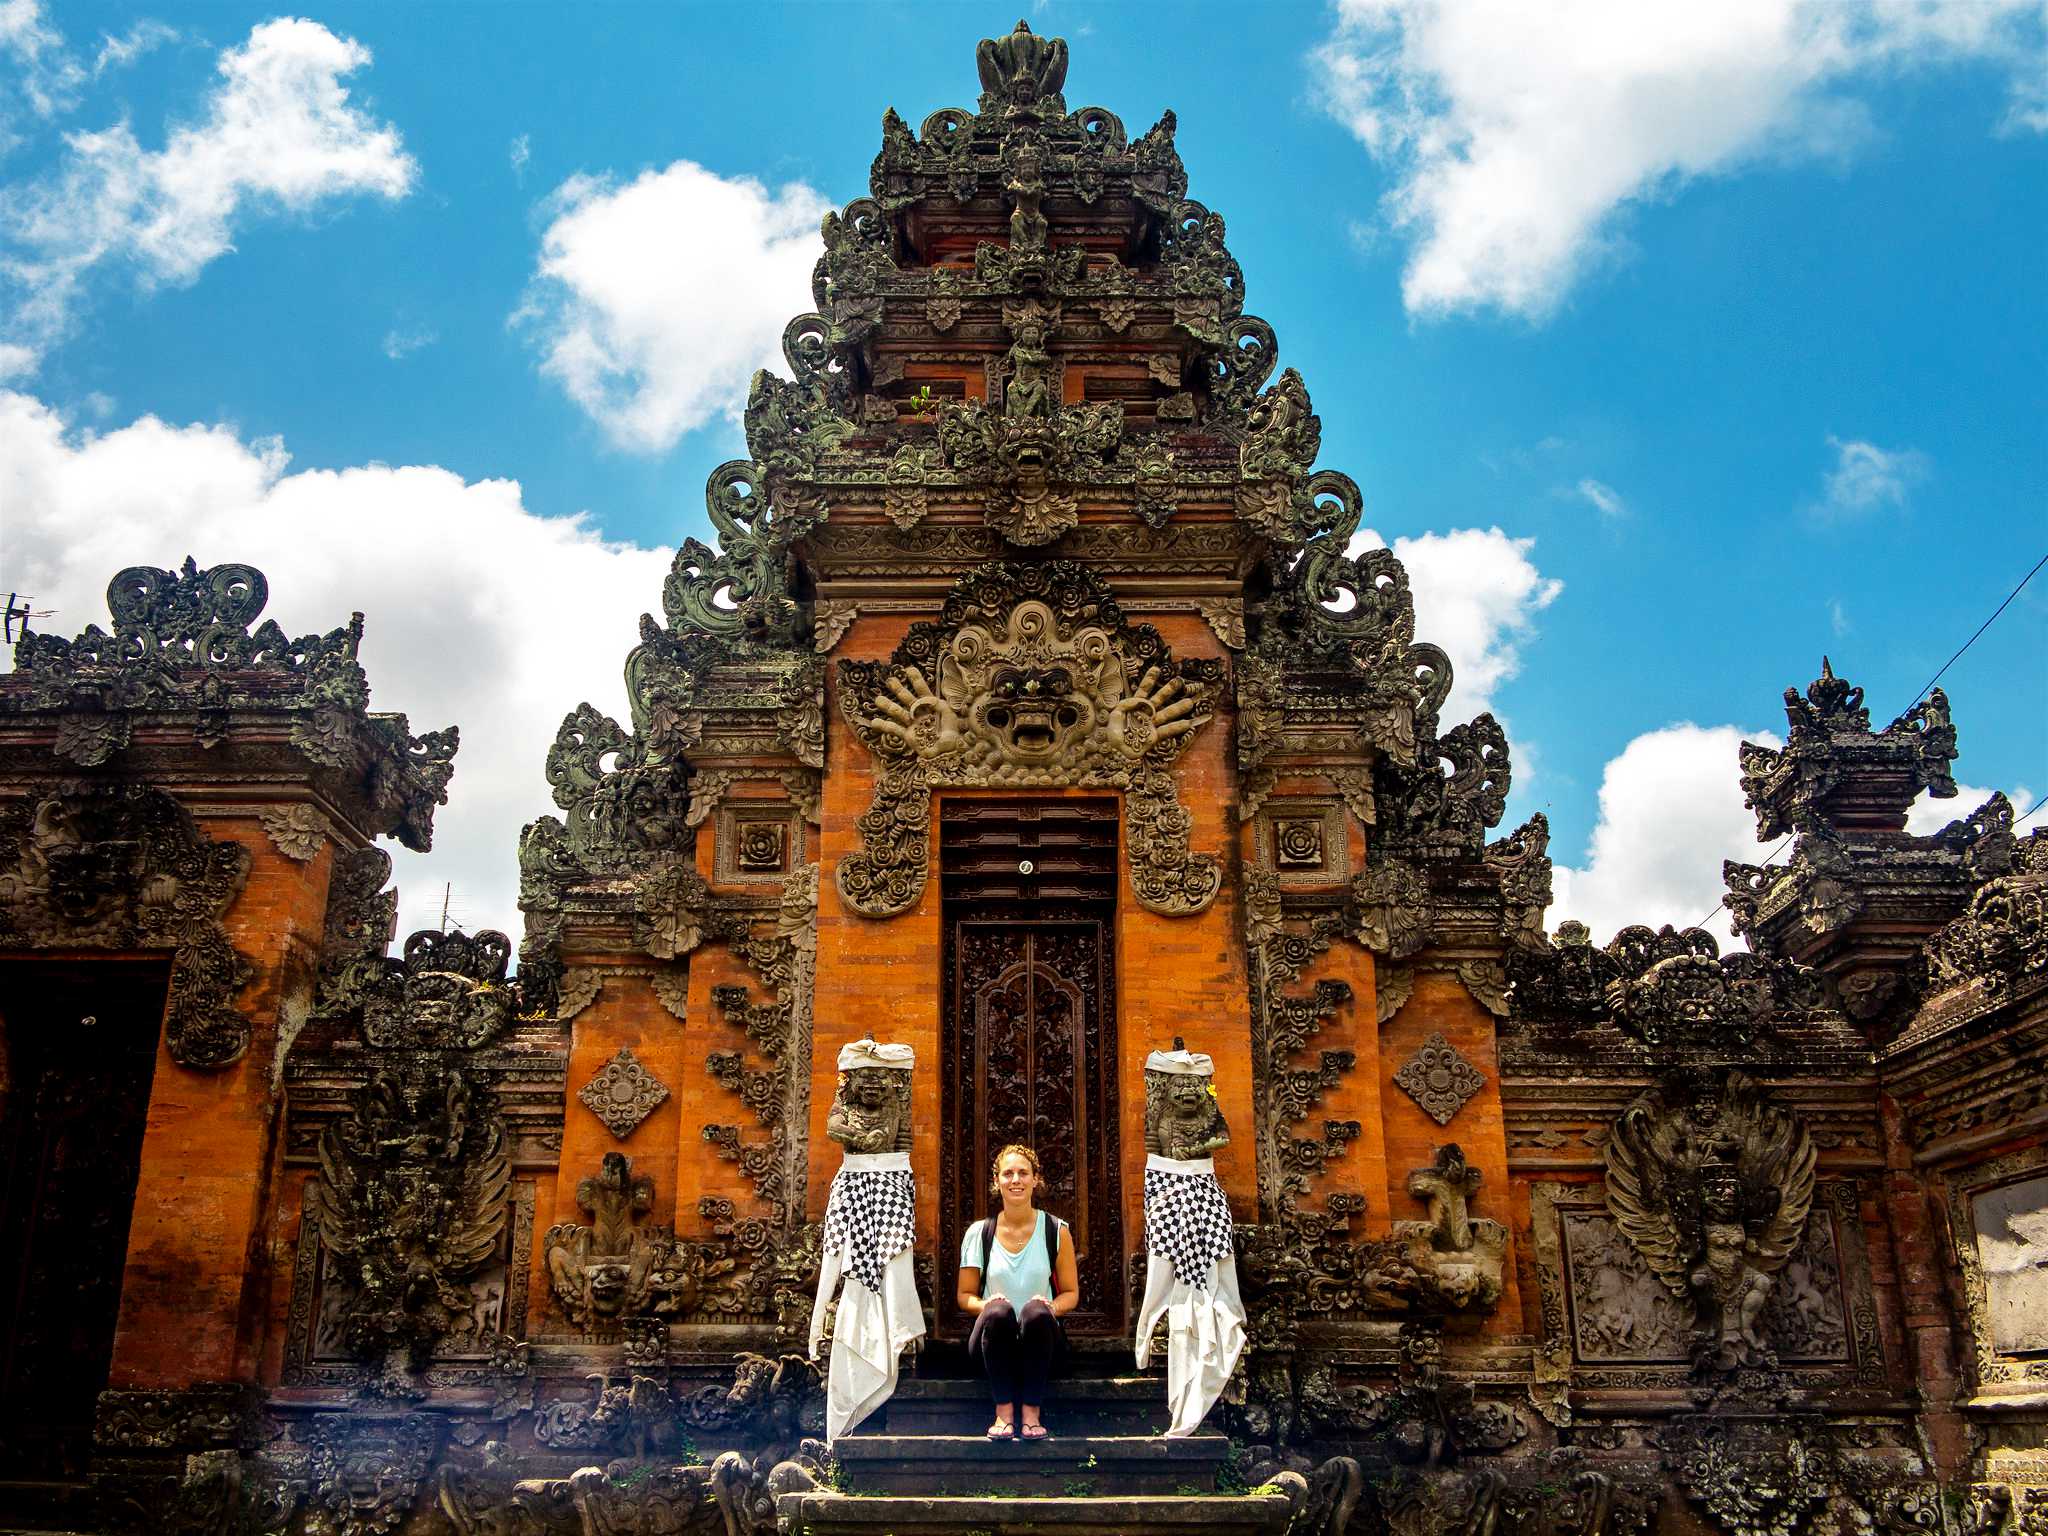 Temple-Bali-1b-Puerta-de-fuego-rapto-por-el-diablo.jpg